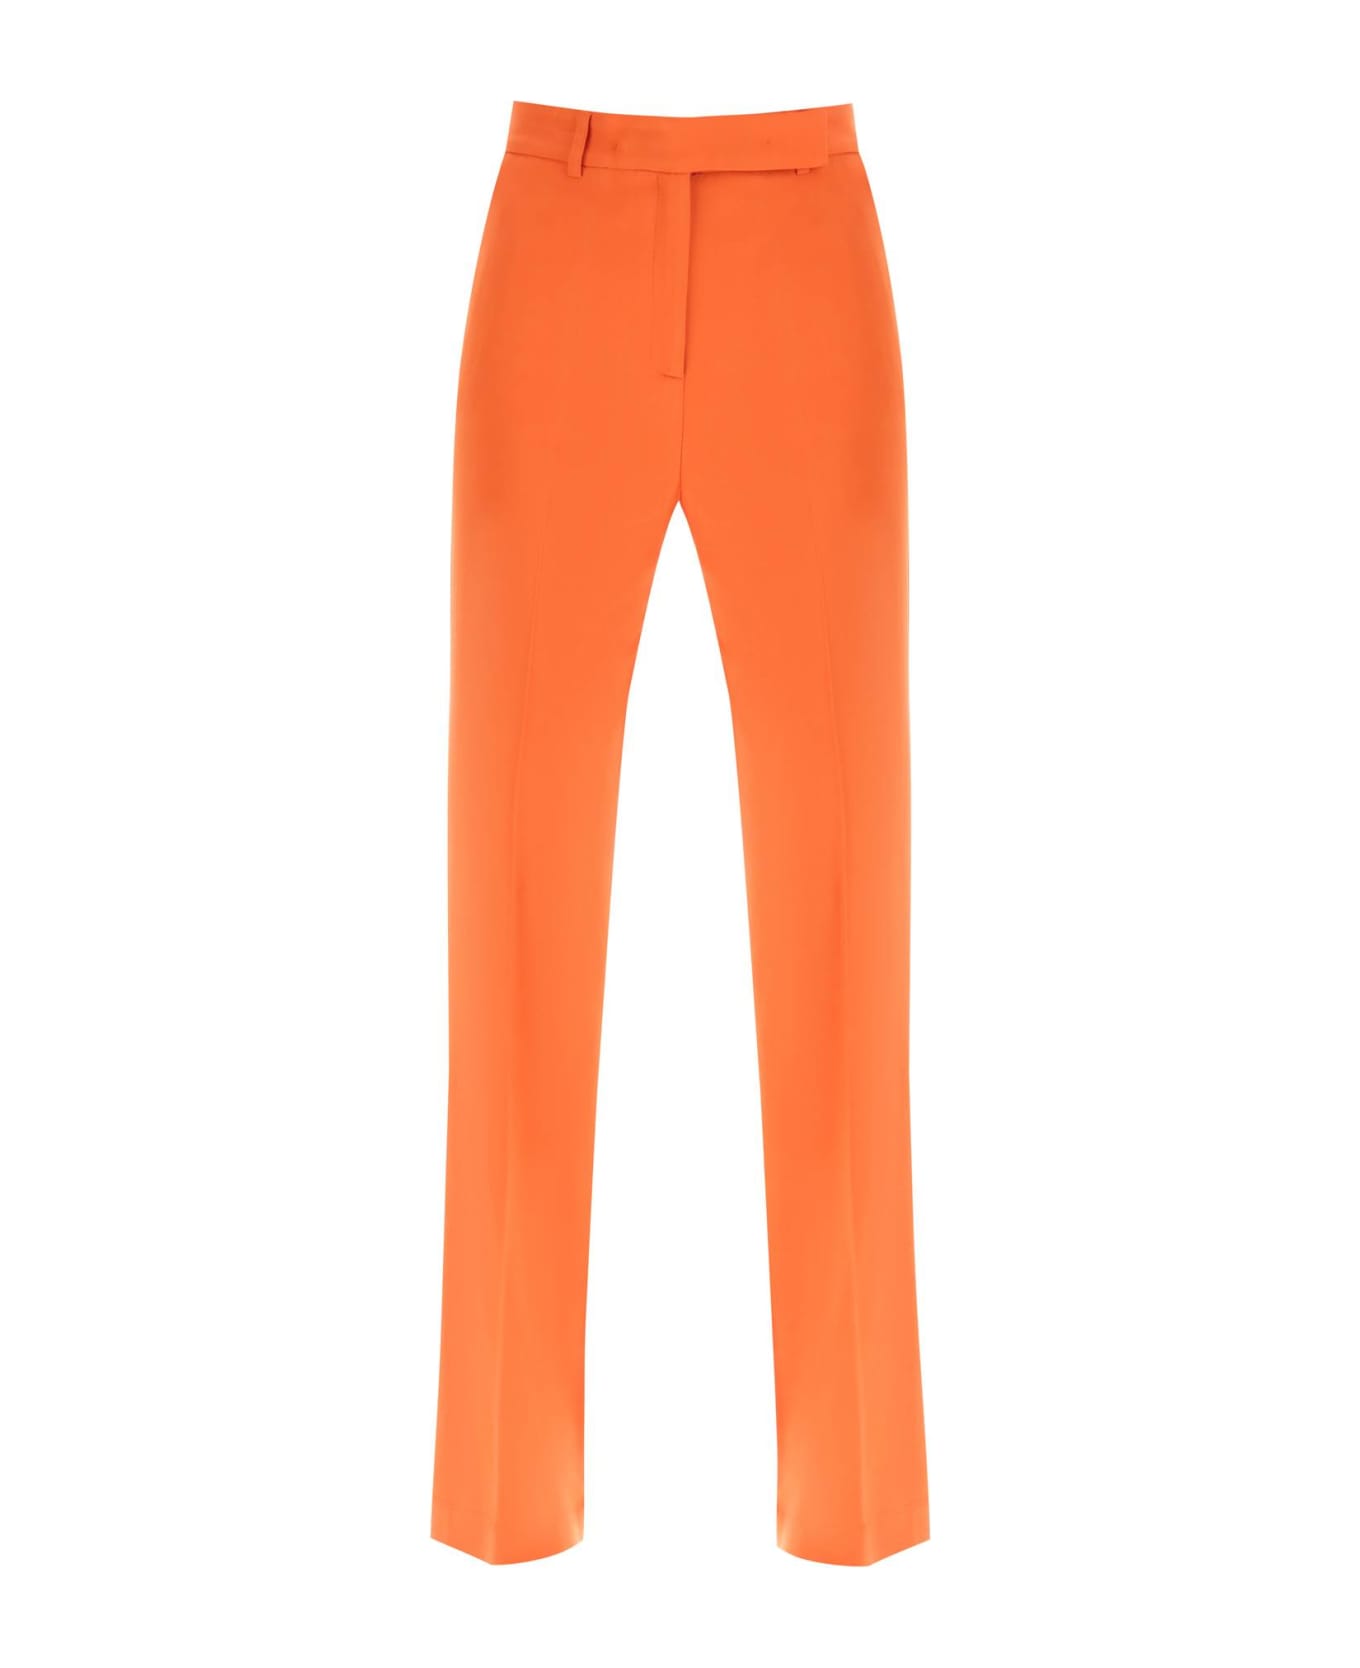 Hebe Studio 'lover' Canvas Trousers - ORANGE (Orange) ボトムス